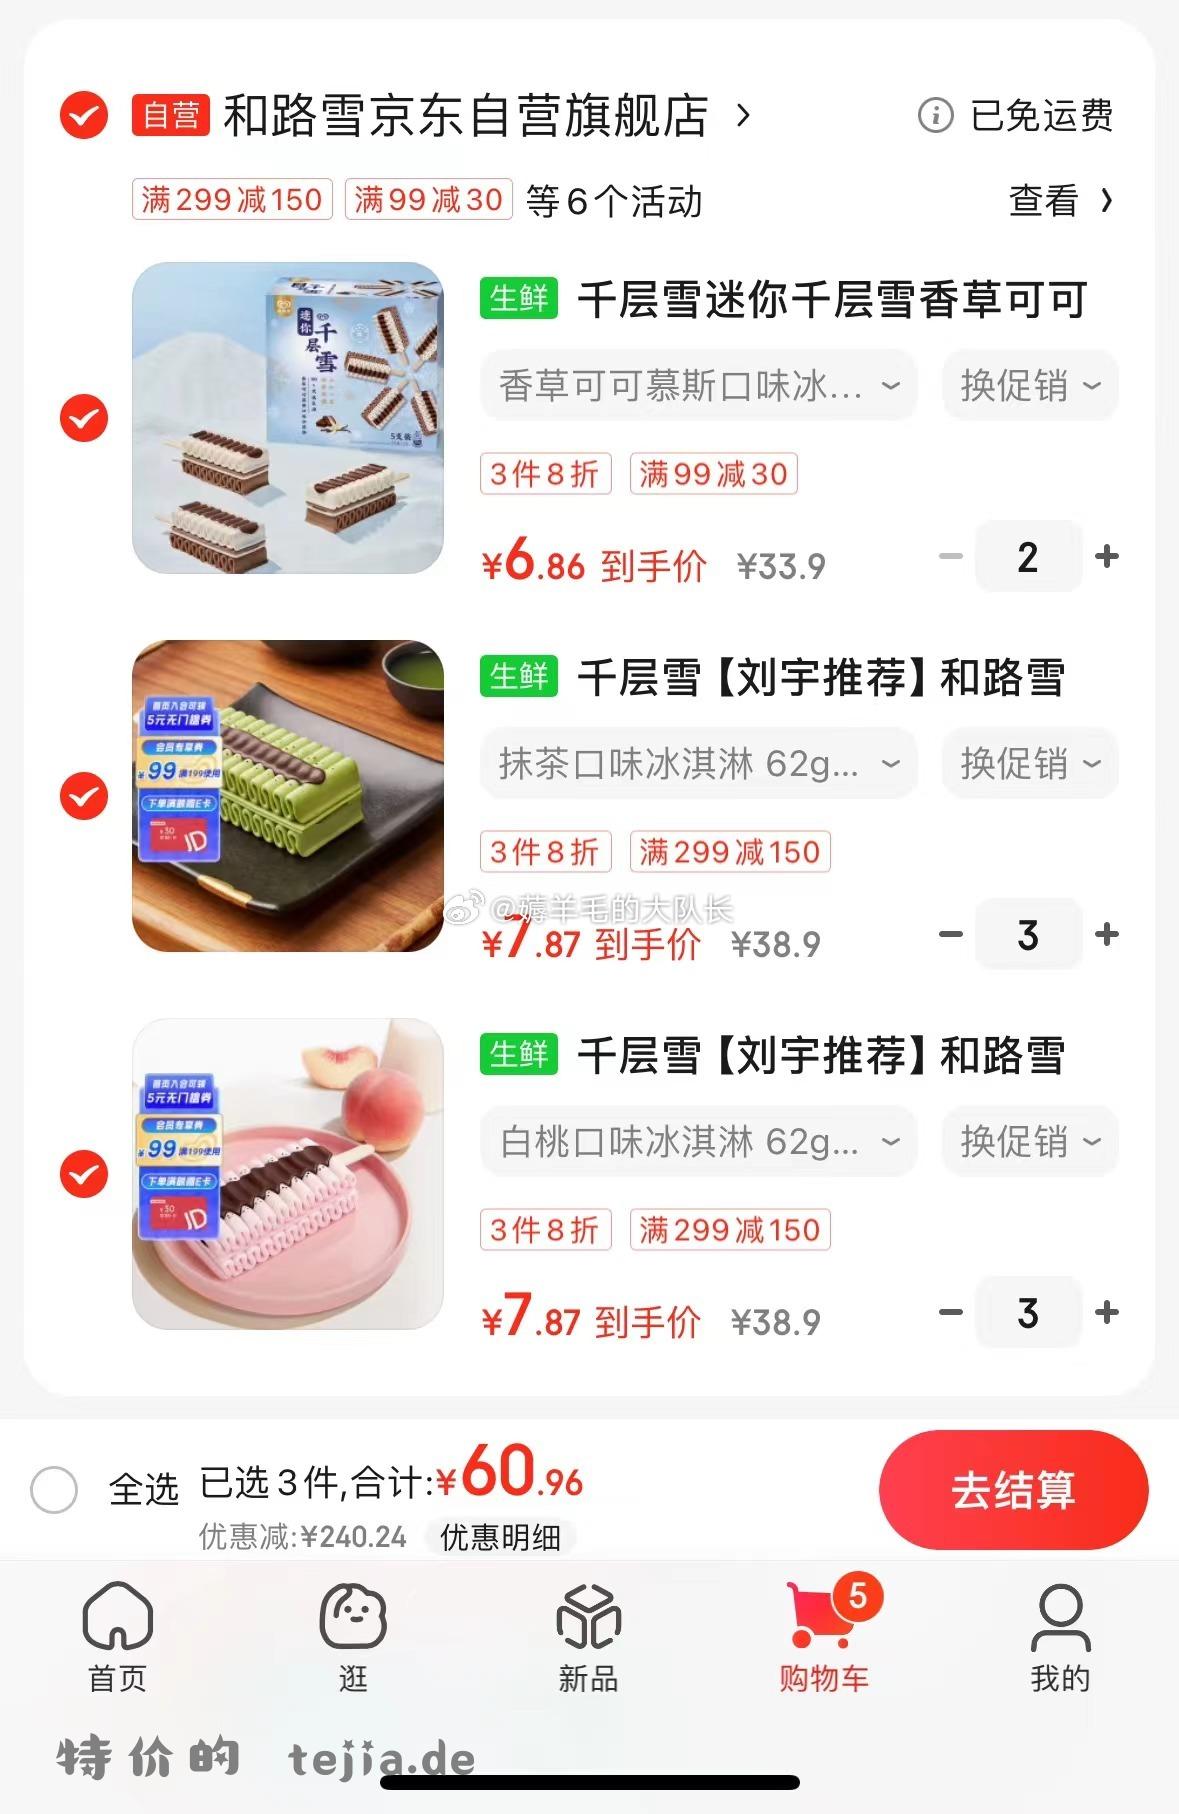 京东app-顶部菜单栏-领券 滑动有这张299-30可爱多券 这几款千层雪 选300付60 - 特价的